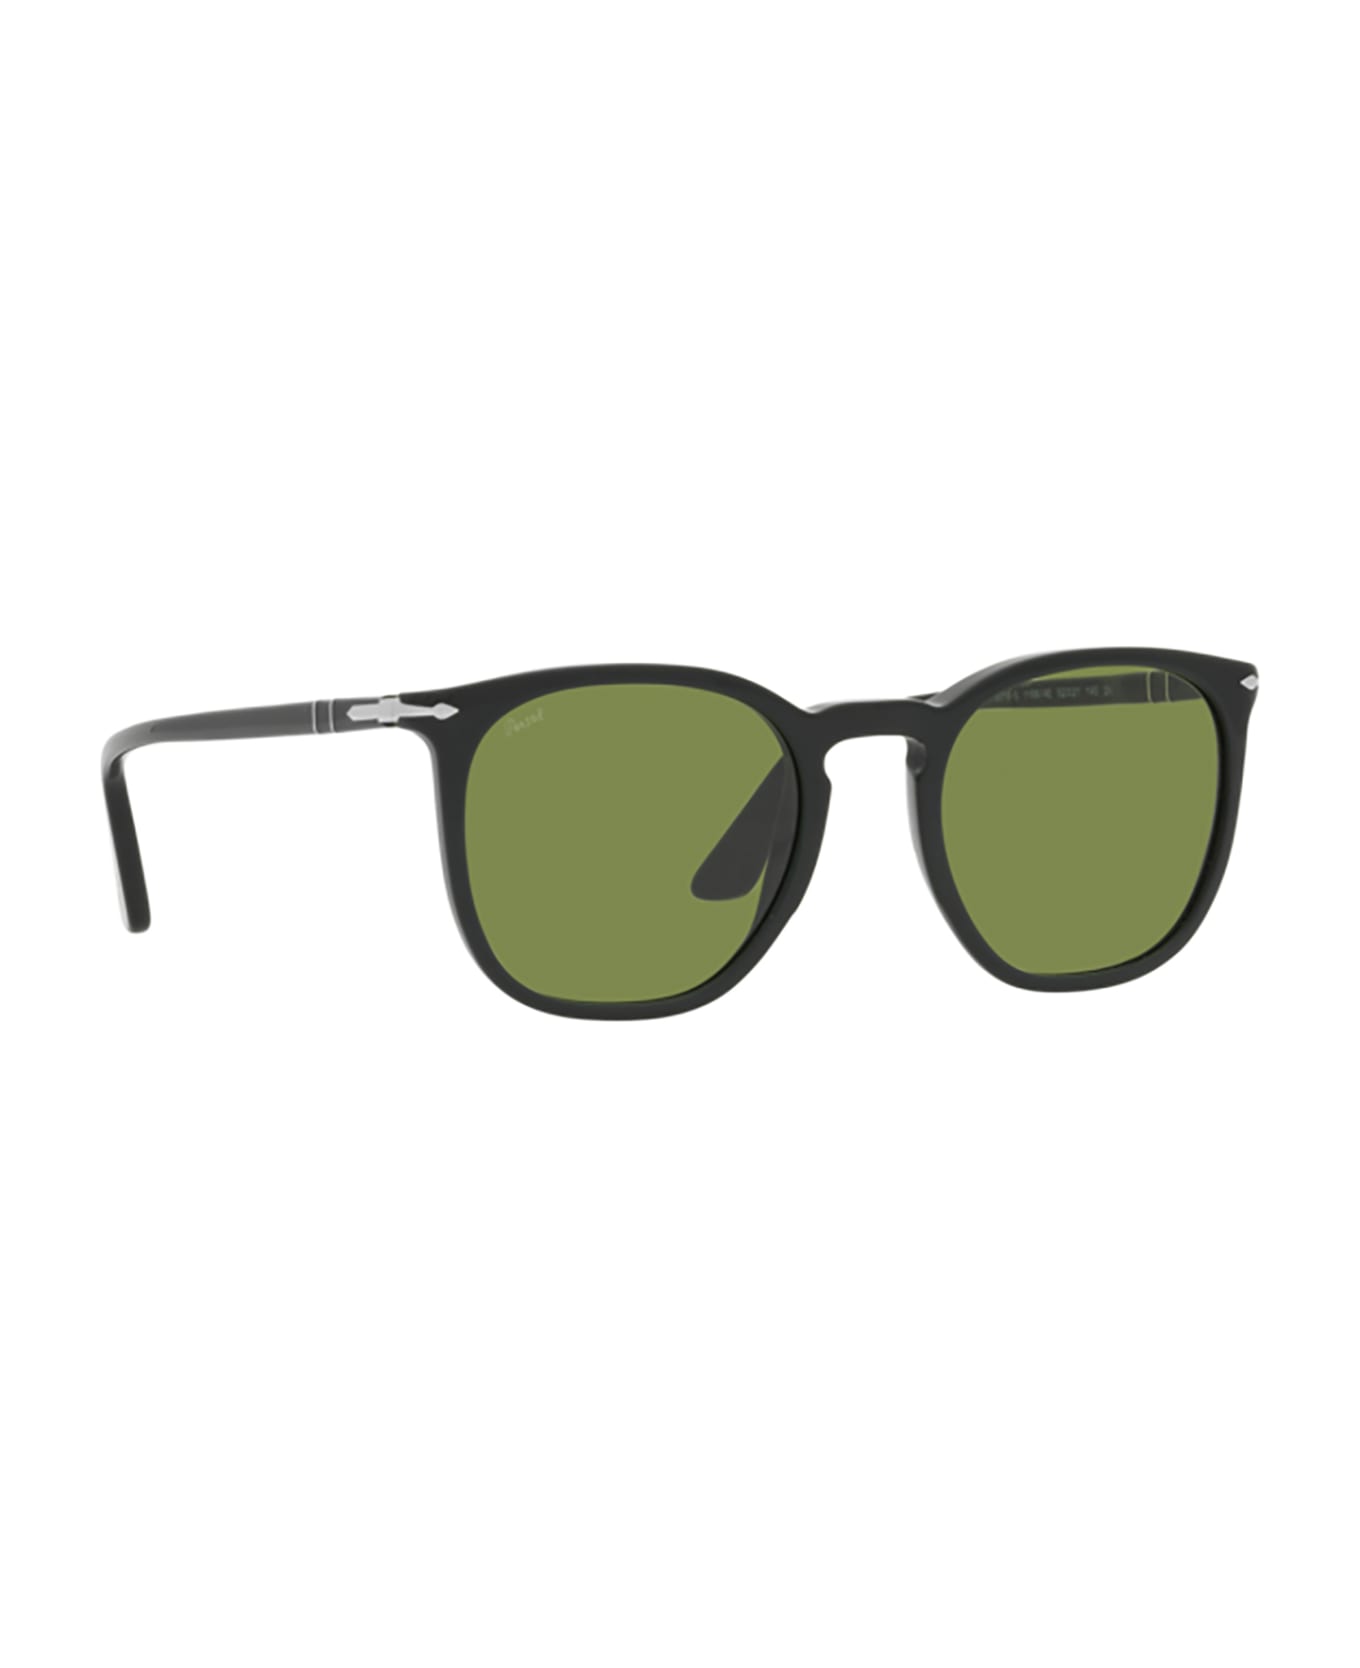 Persol Po3316s Matte Dark Green Sunglasses - Matte Dark Green